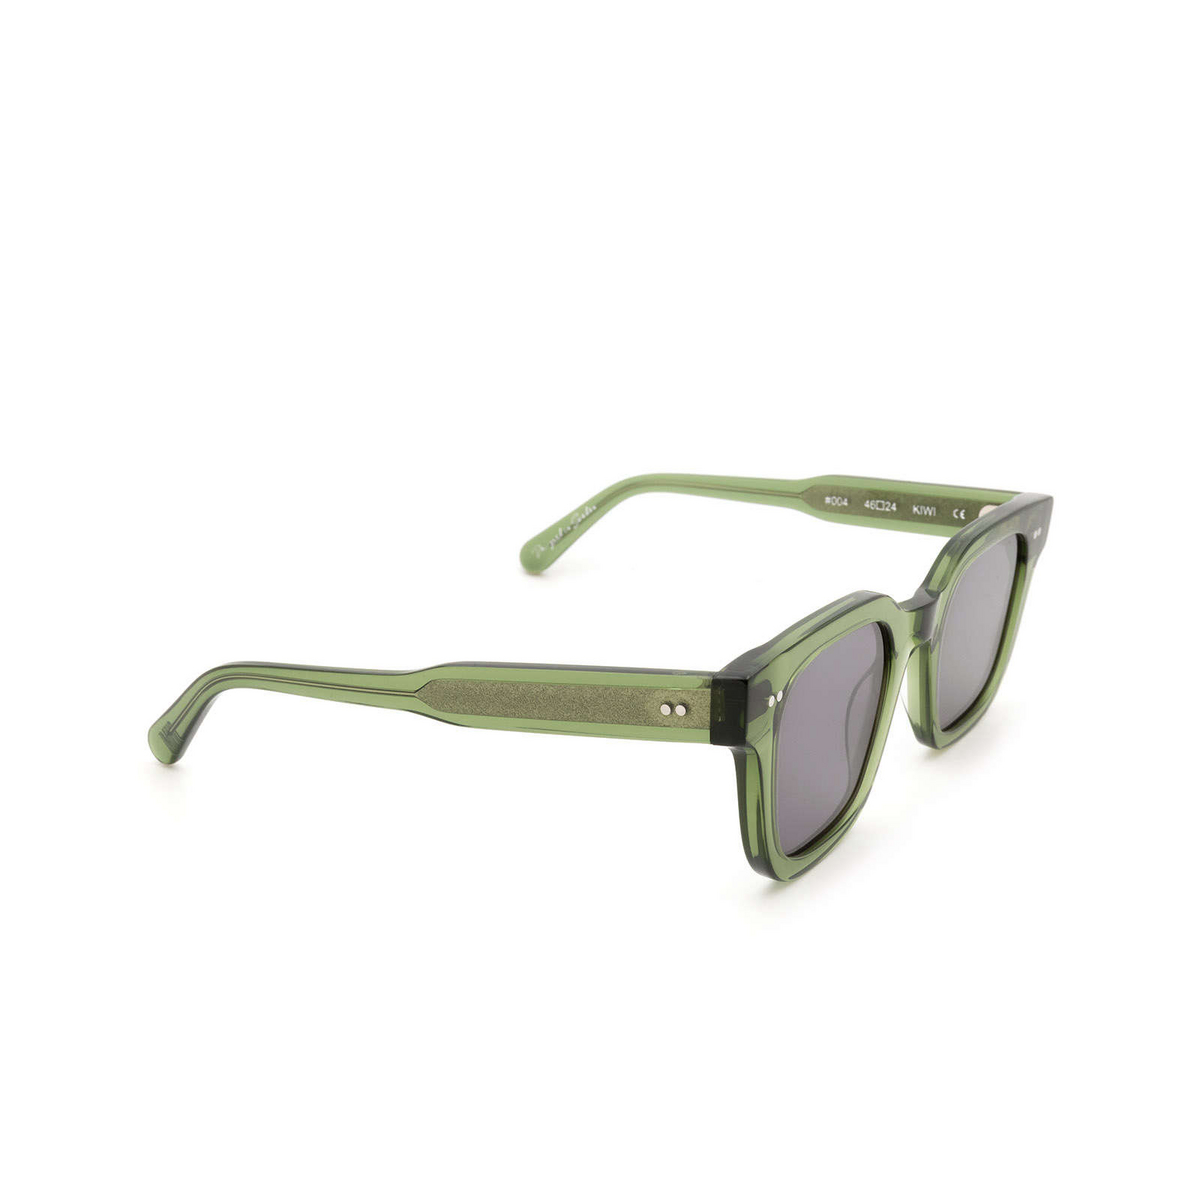 Chimi #004 Sunglasses KIWI Green - three-quarters view